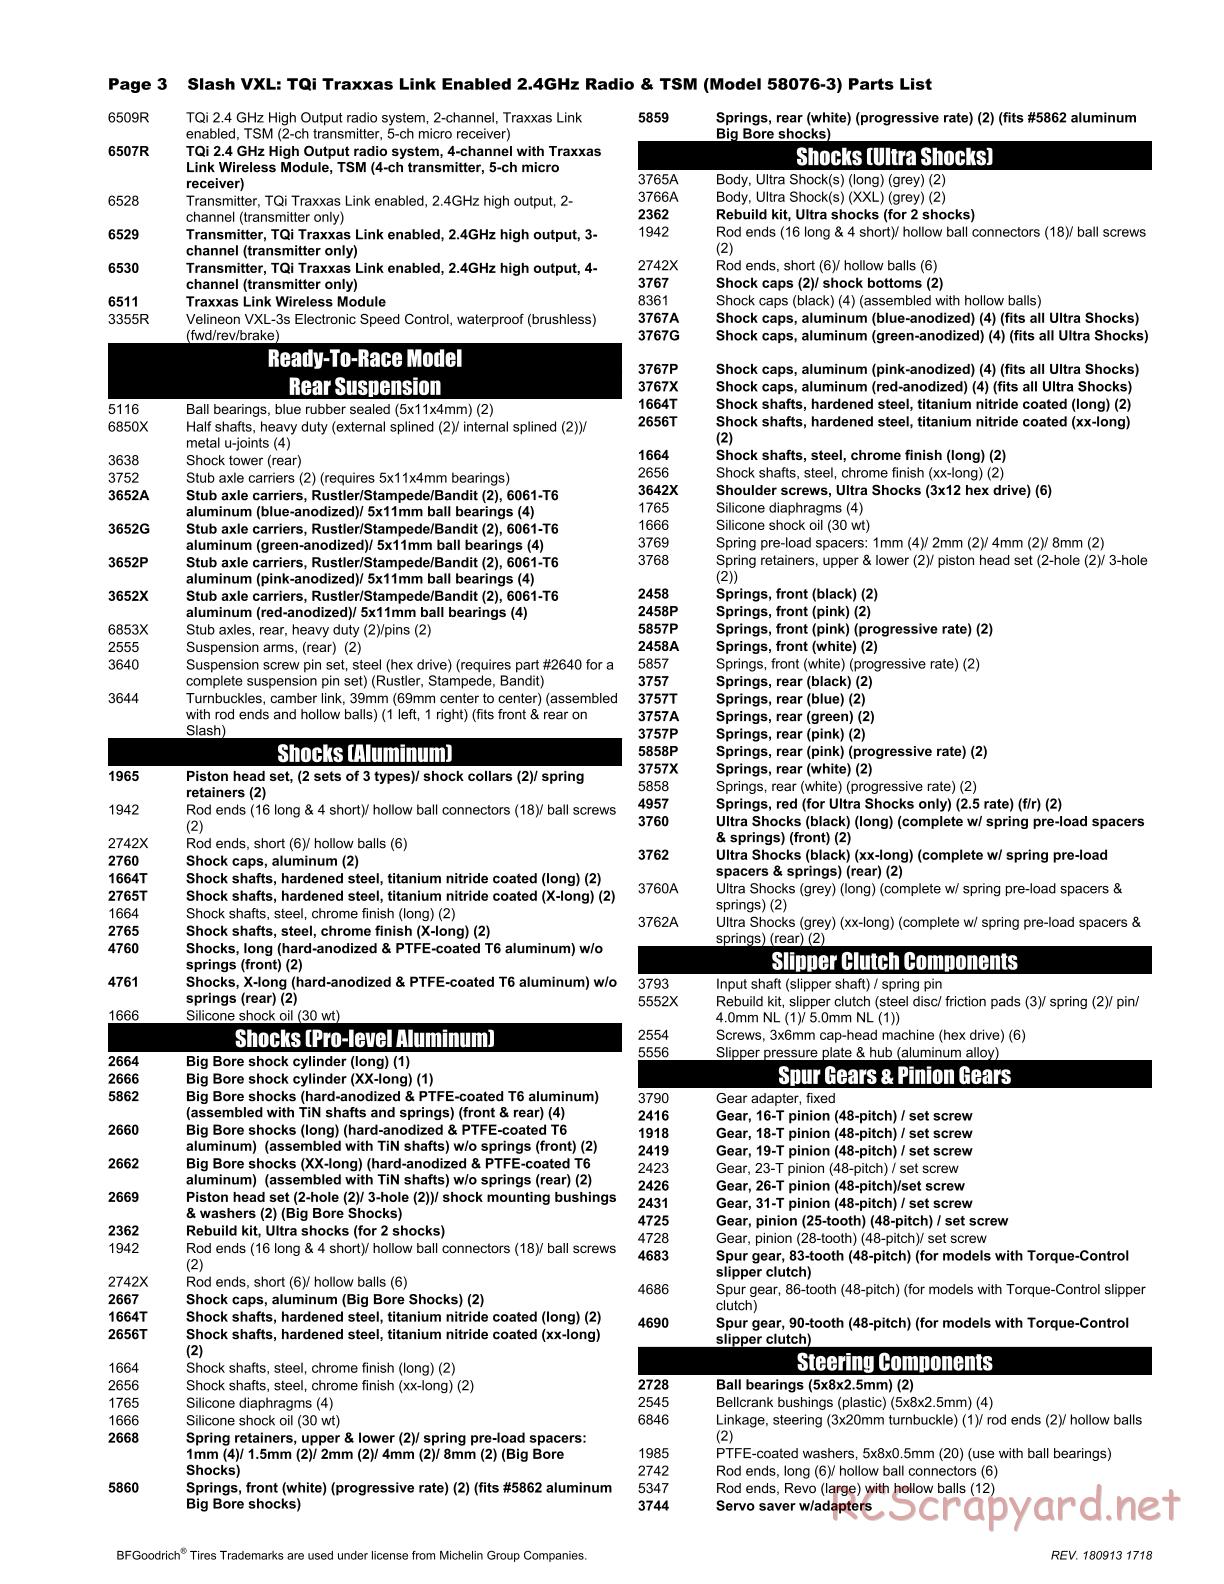 Traxxas - Slash 2WD VXL TSM (2015) - Parts List - Page 3